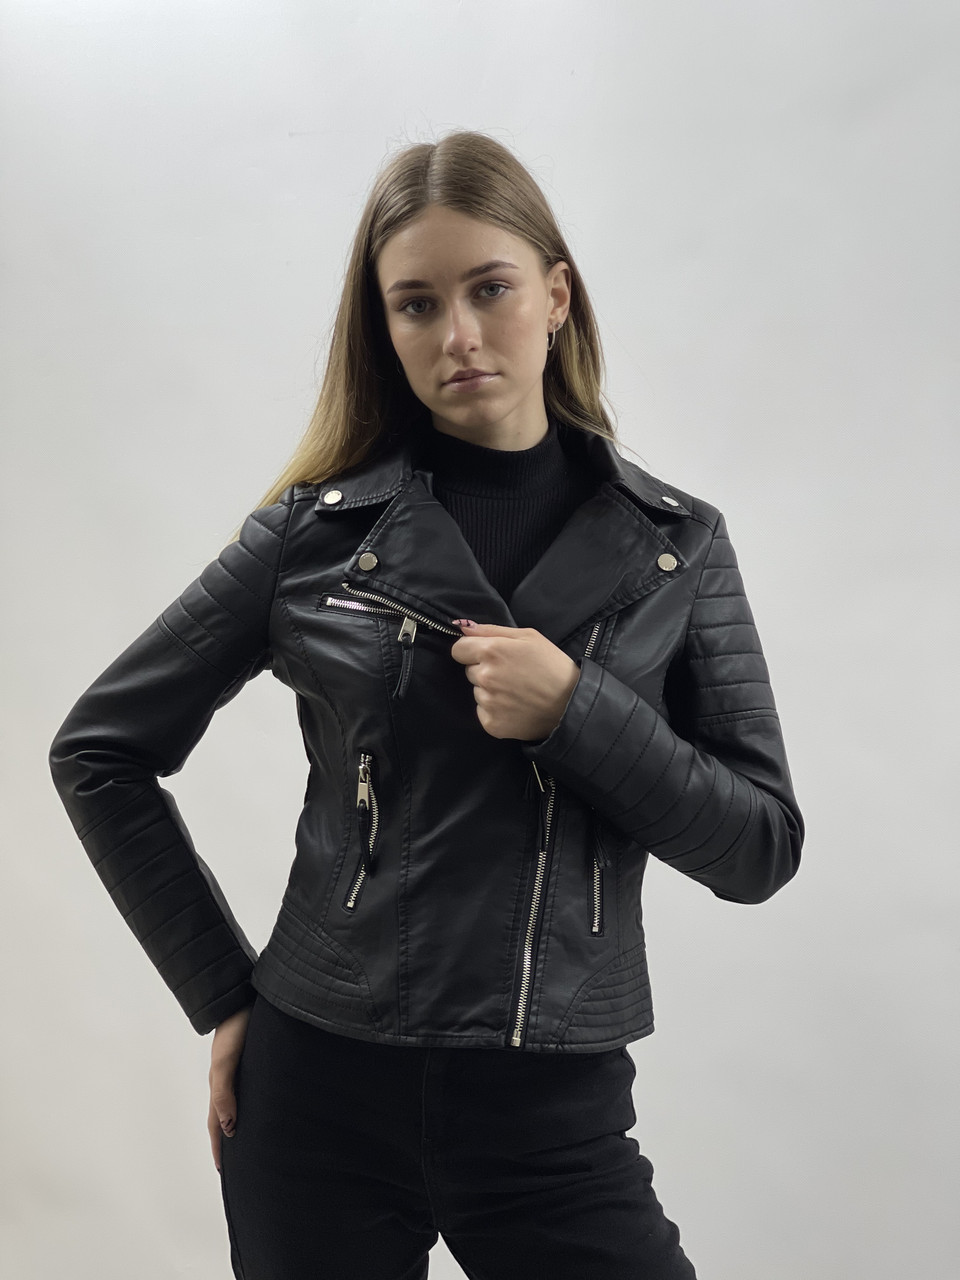 Женская куртка-косуха из кожы телёнка серого цвета в стиле ВИНТАЖ